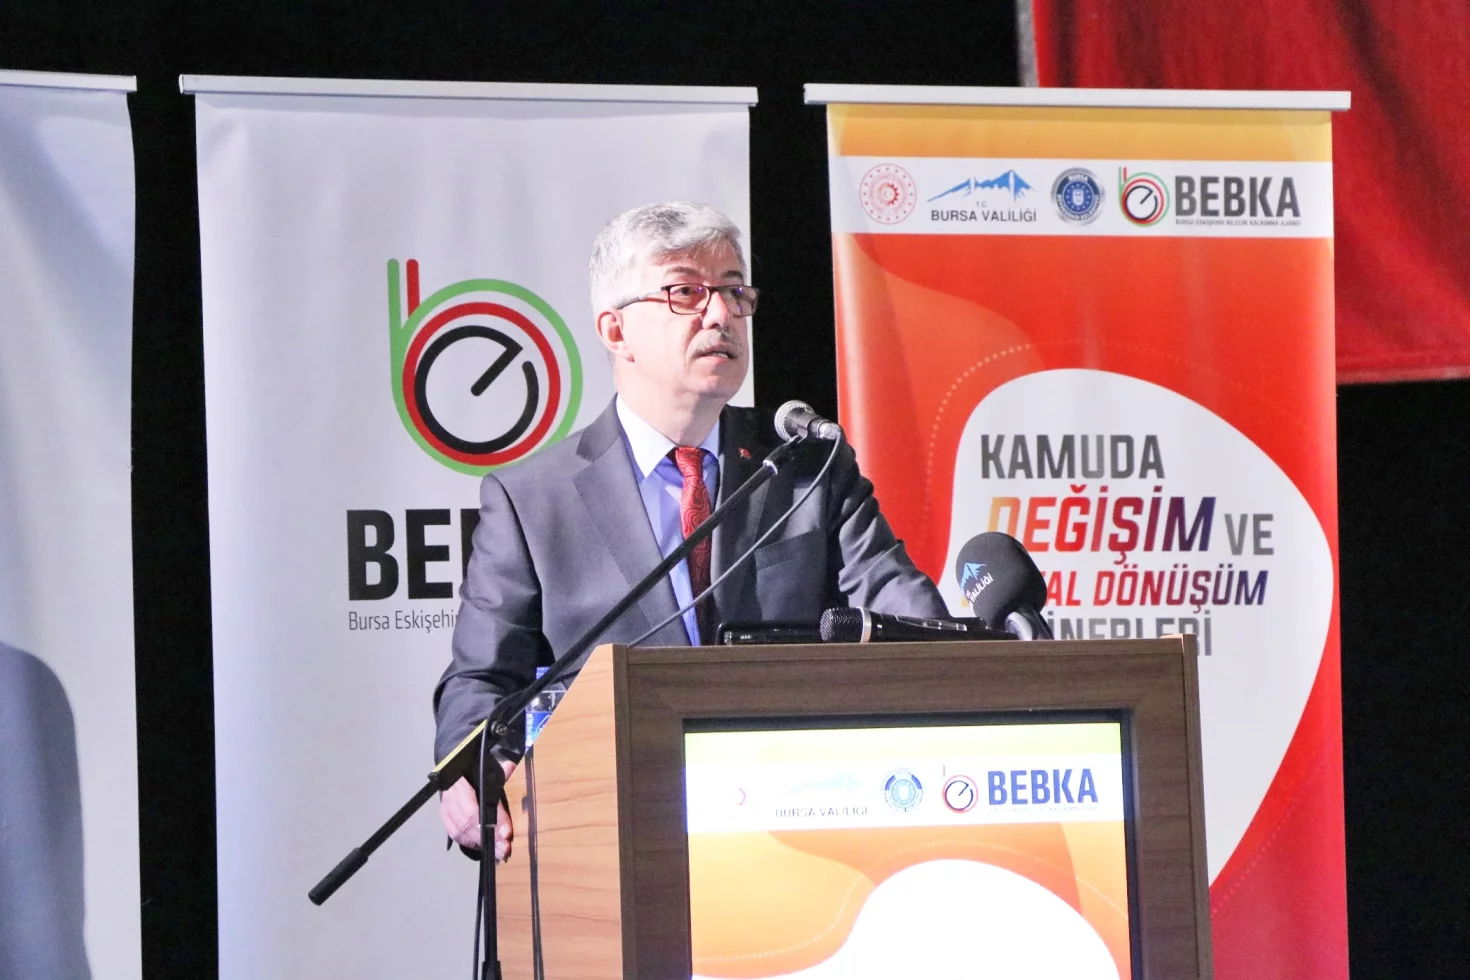 Kamuda değişim ve dijital dönüşüme BEBKA desteği